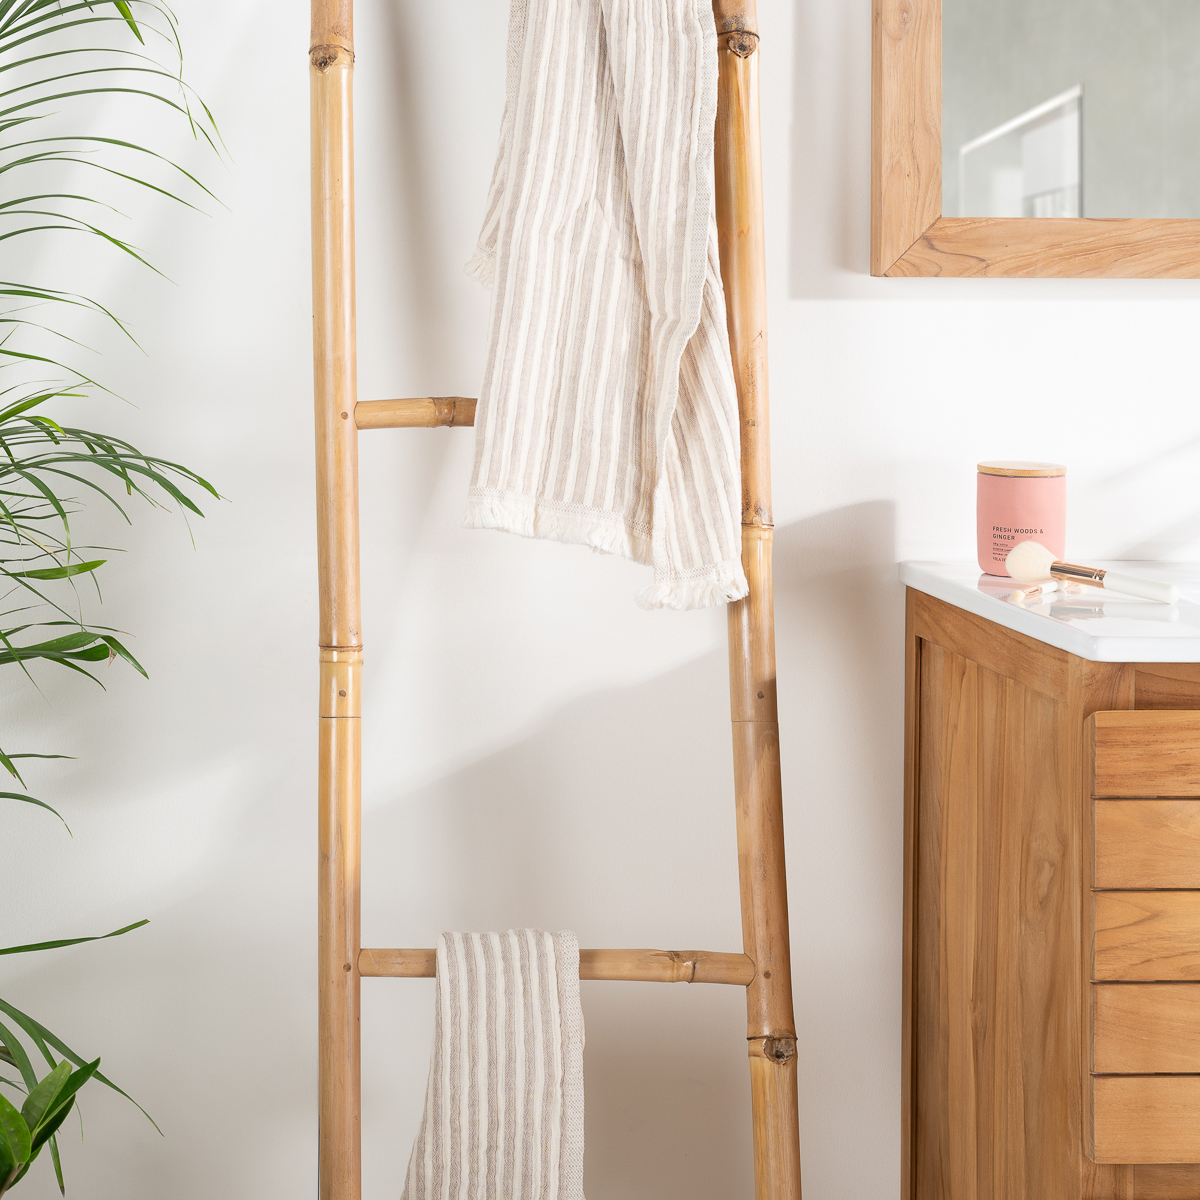 Toallero escalera de madera de bambú 170 cm